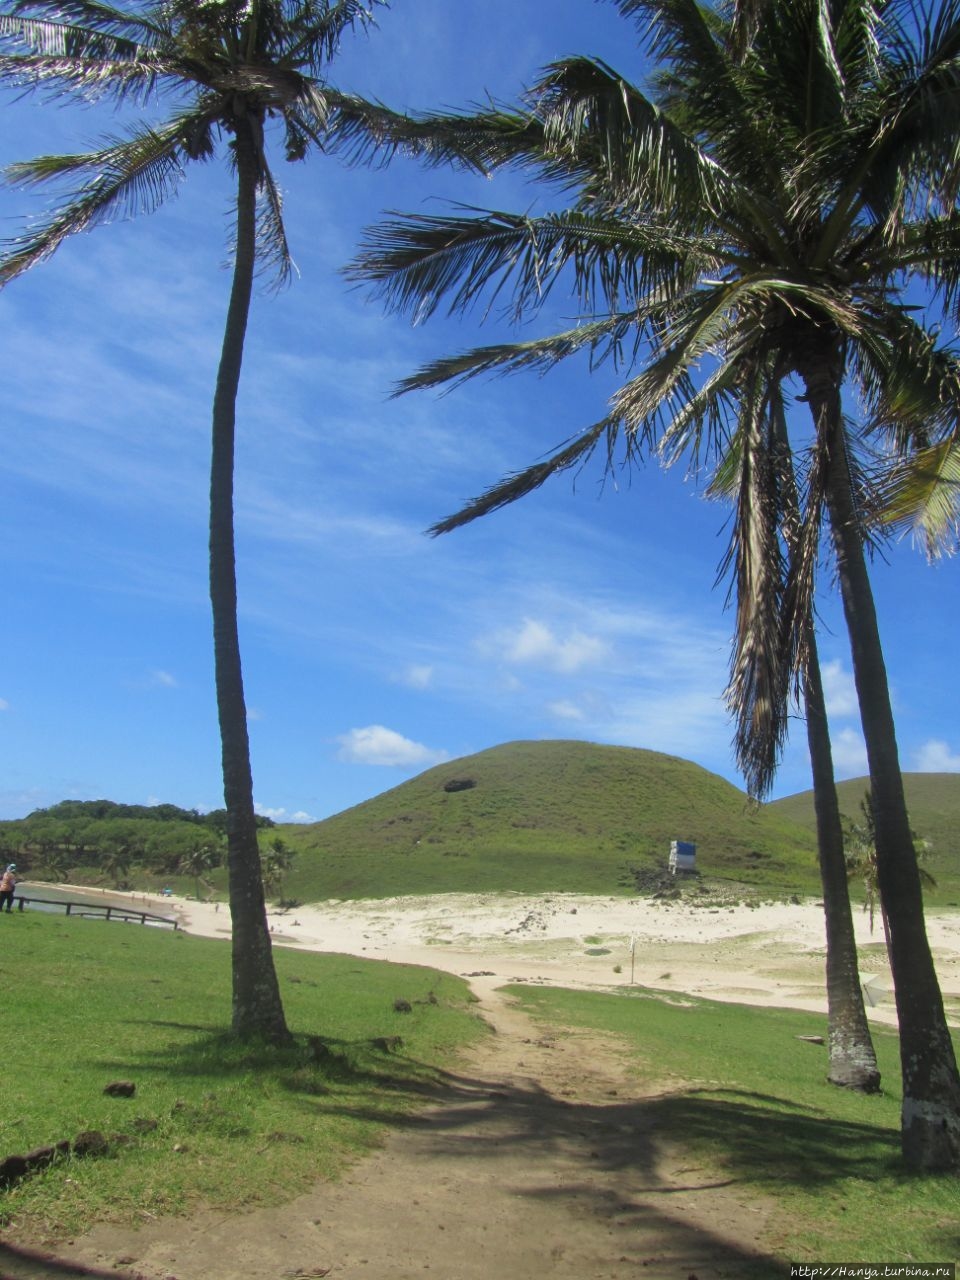 Анакена – райский пляж с церемониальным аху Нау Нау. Ч.71